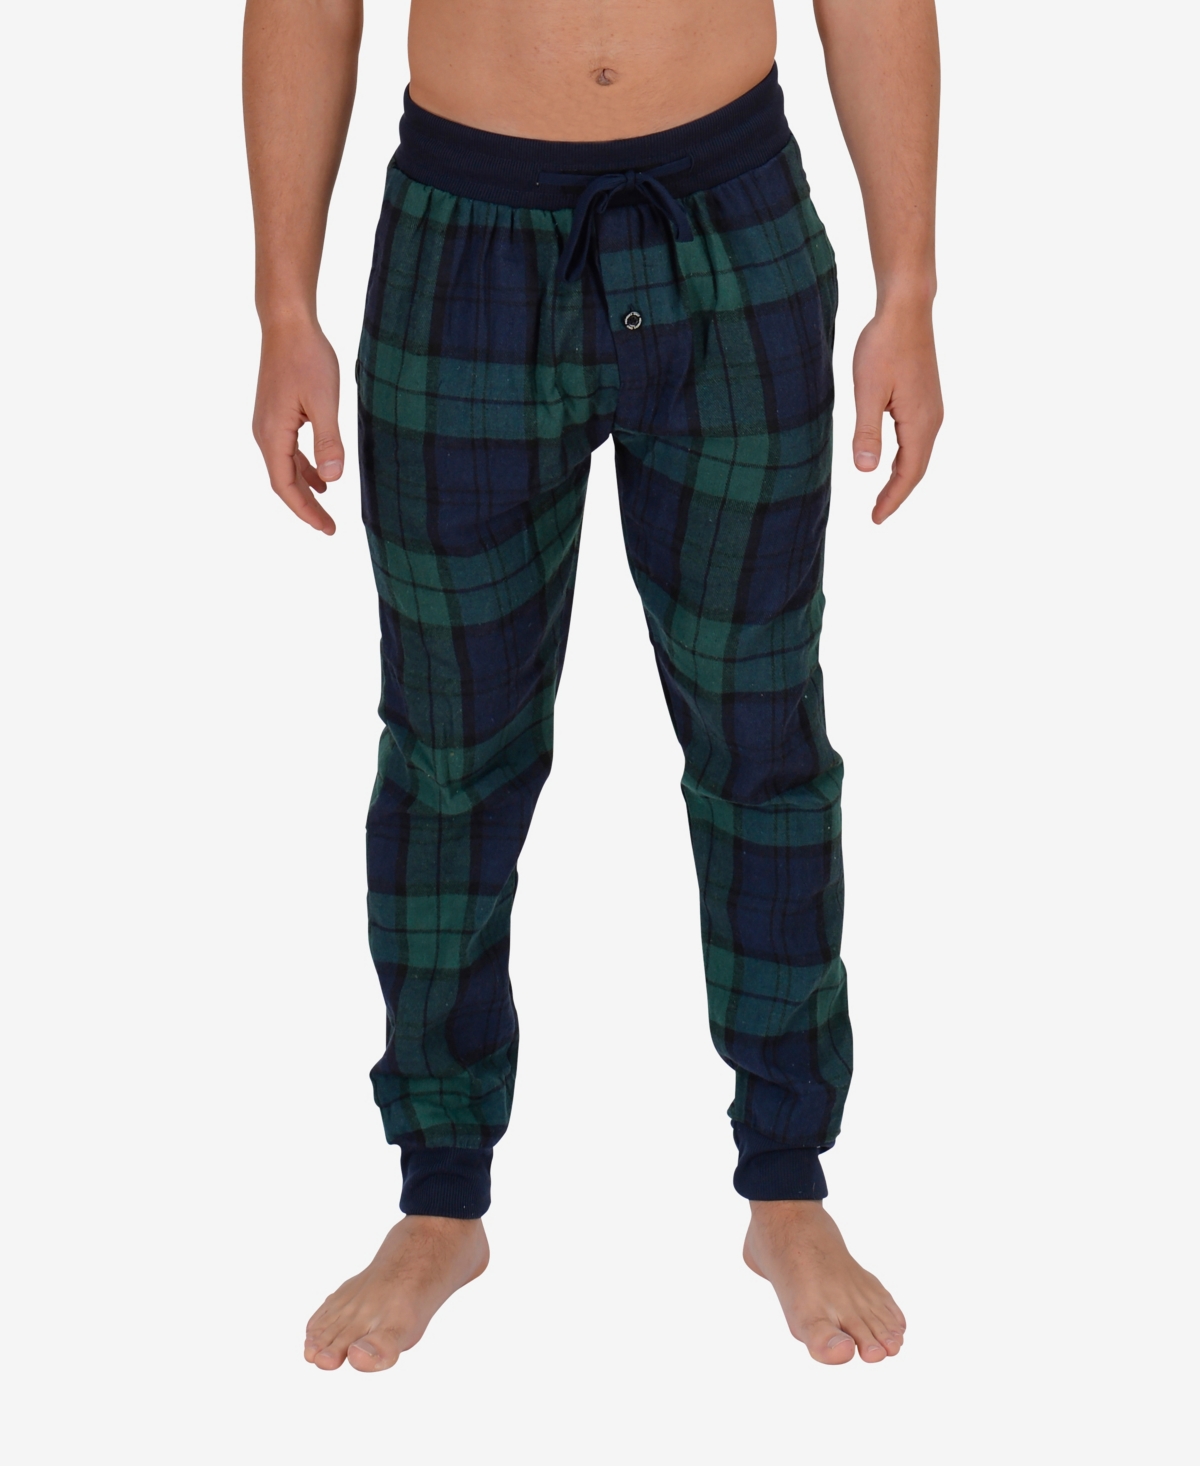 Men's Flannel Jogger Lounge Pants - Green, Blue Plaid